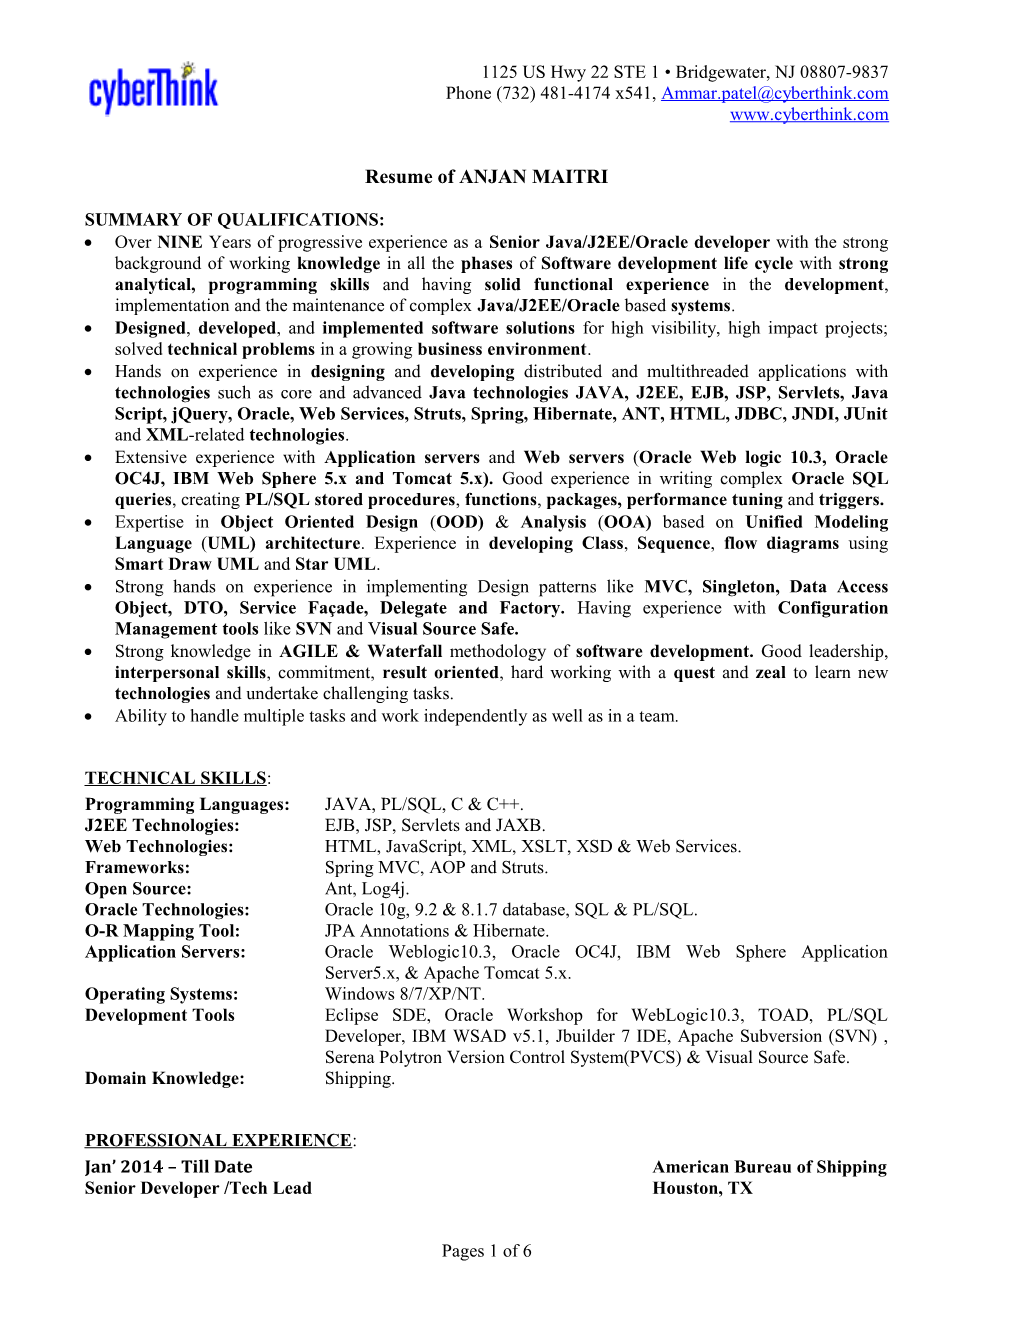 Resume of ANJAN MAITRI